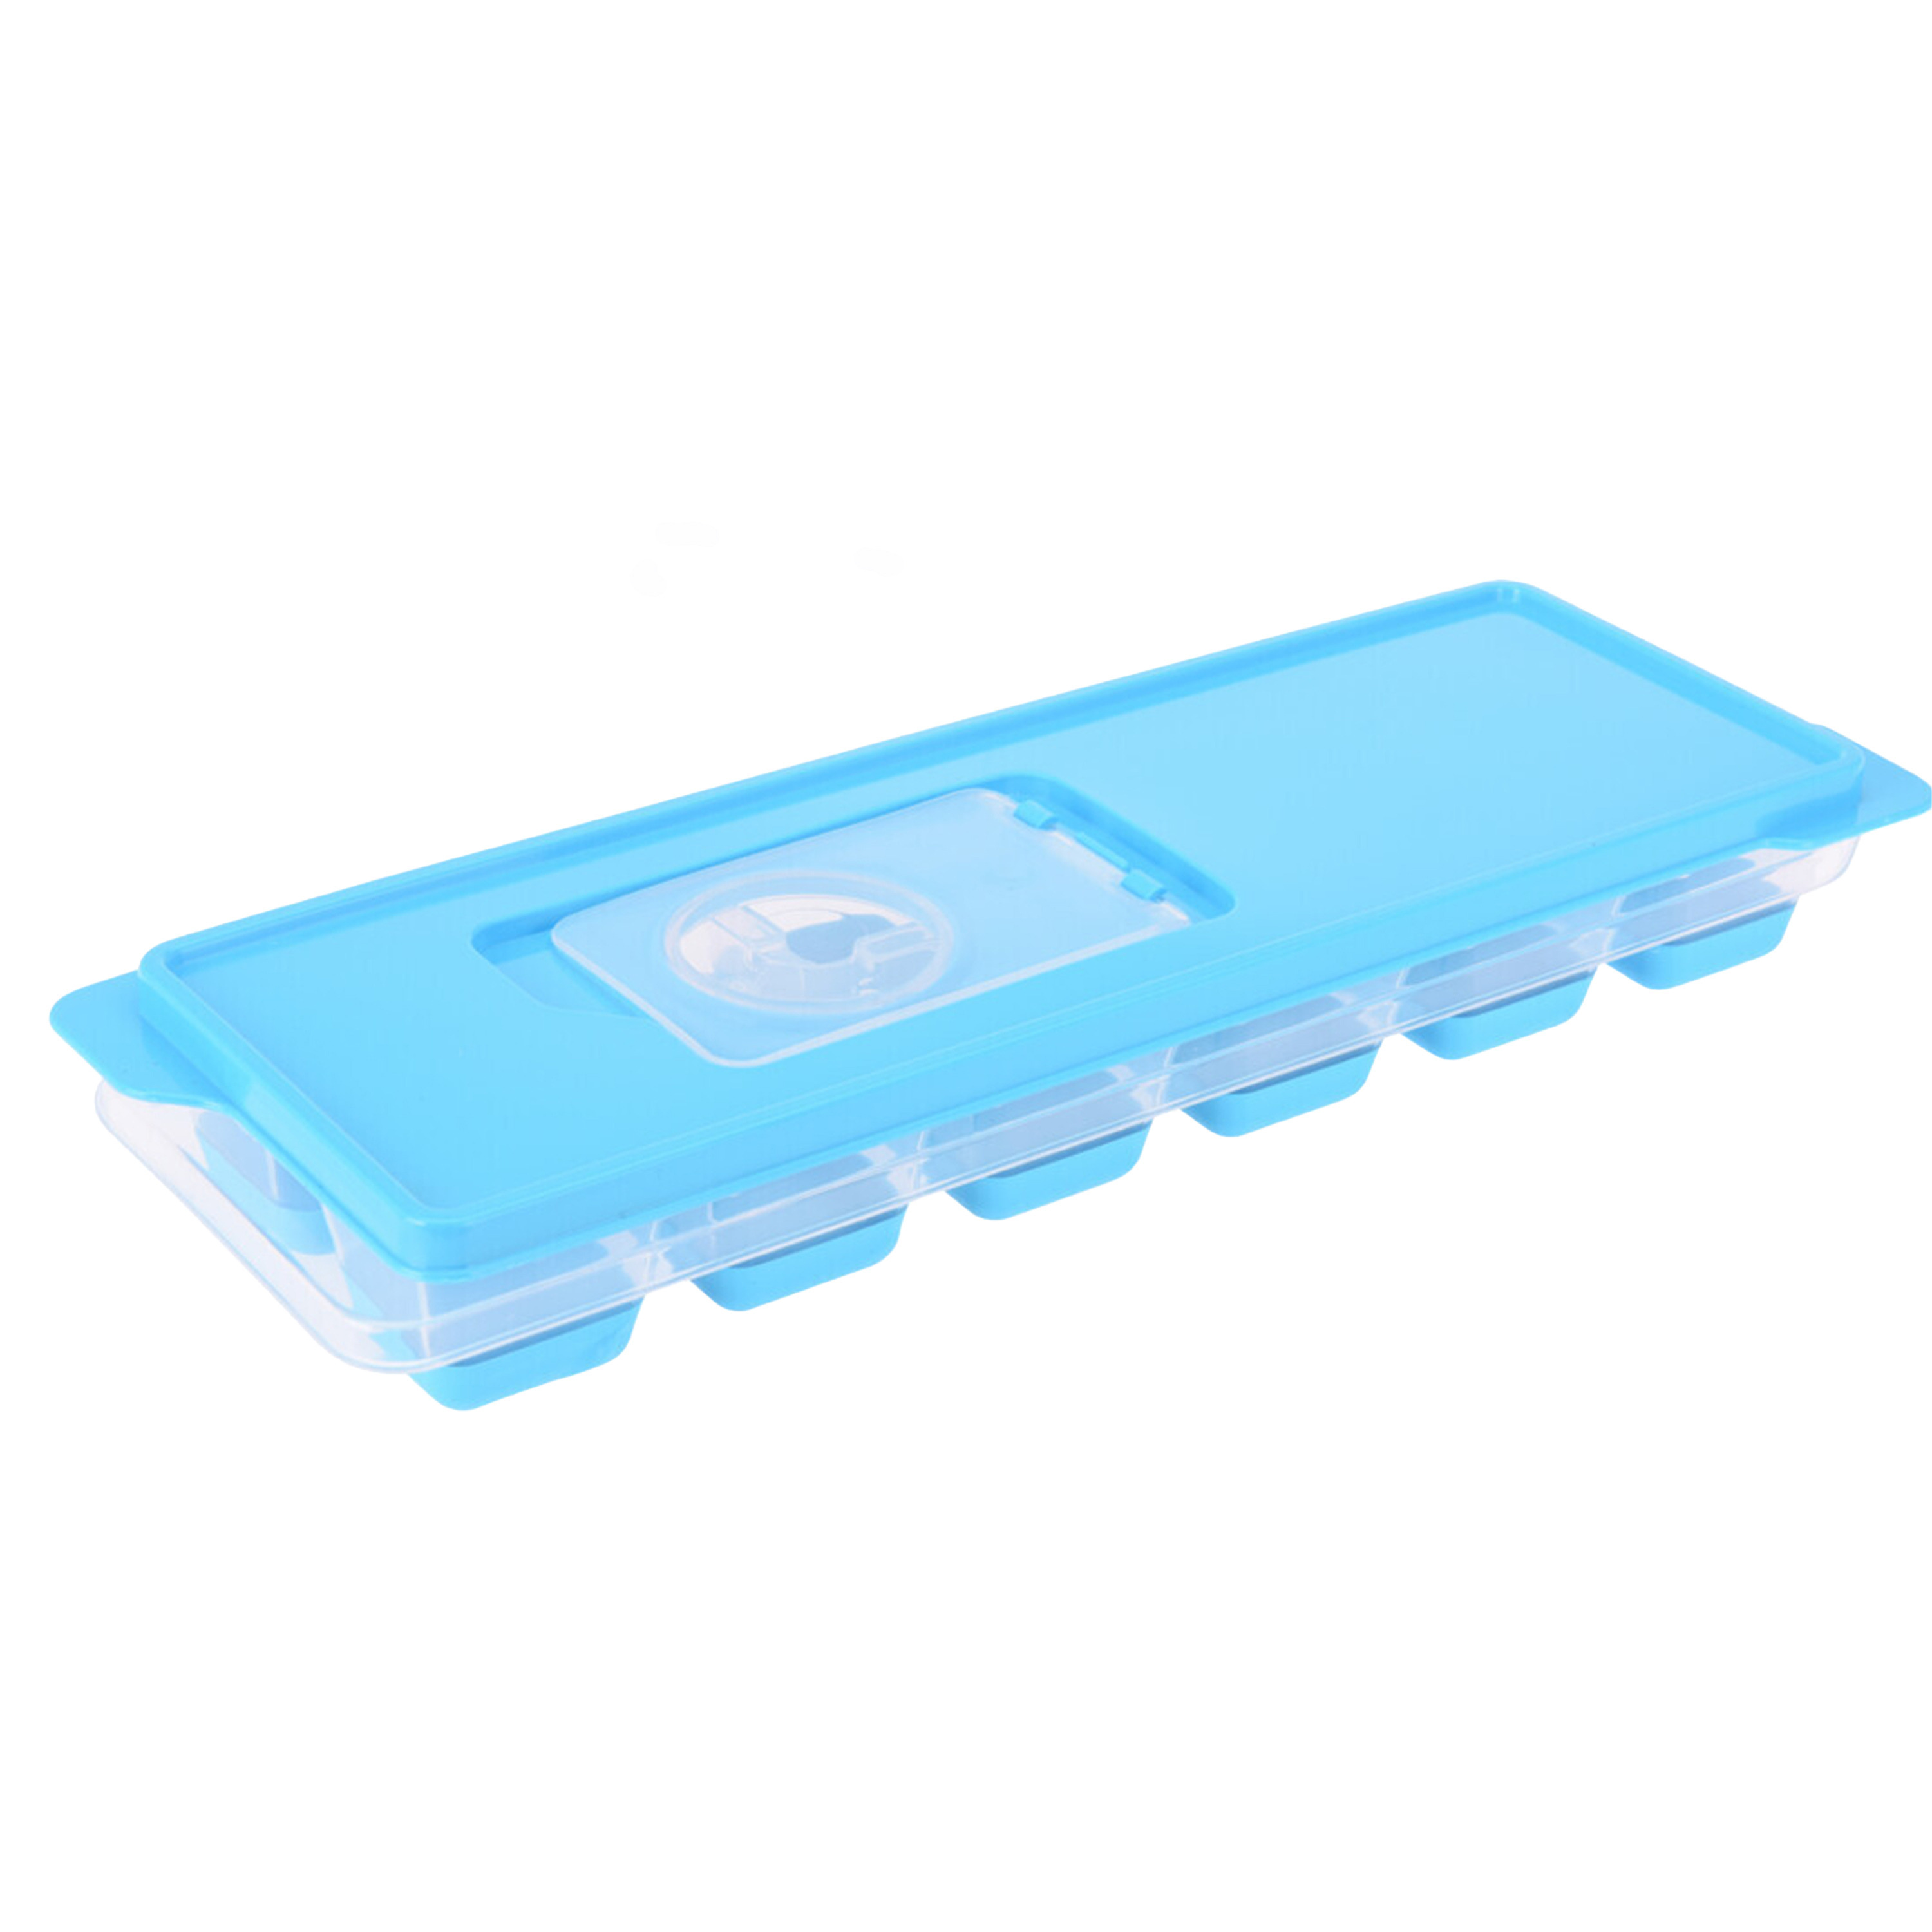 Tray met ijsklontjes/ijsblokjes vormpjes 12 vakjes kunststof blauw met afsluitdeksel